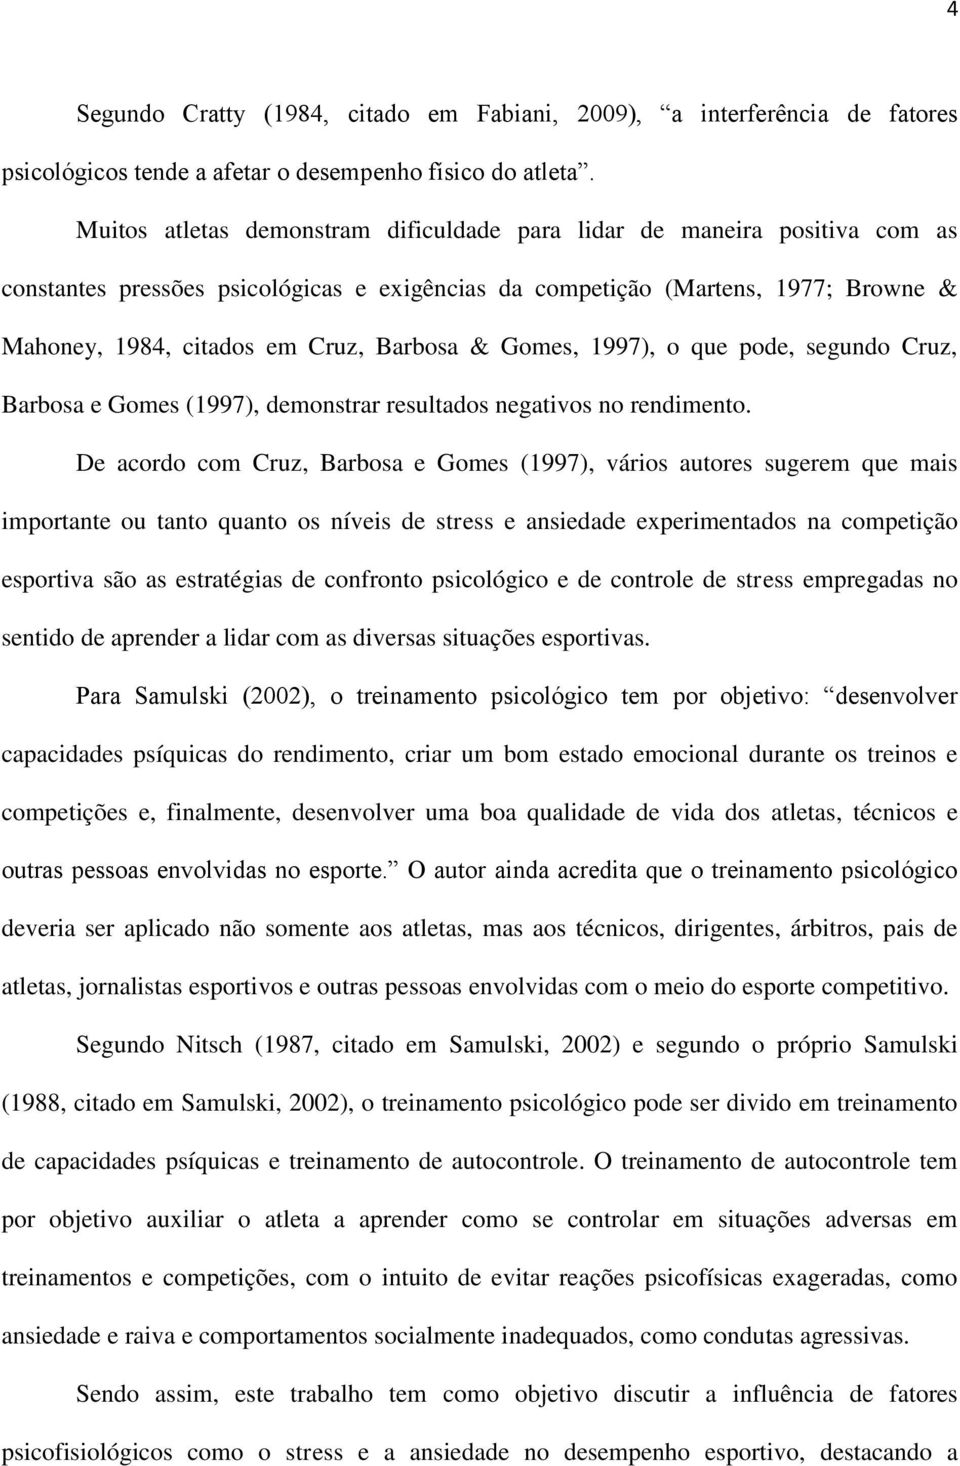 Barbosa & Gomes, 1997), o que pode, segundo Cruz, Barbosa e Gomes (1997), demonstrar resultados negativos no rendimento.